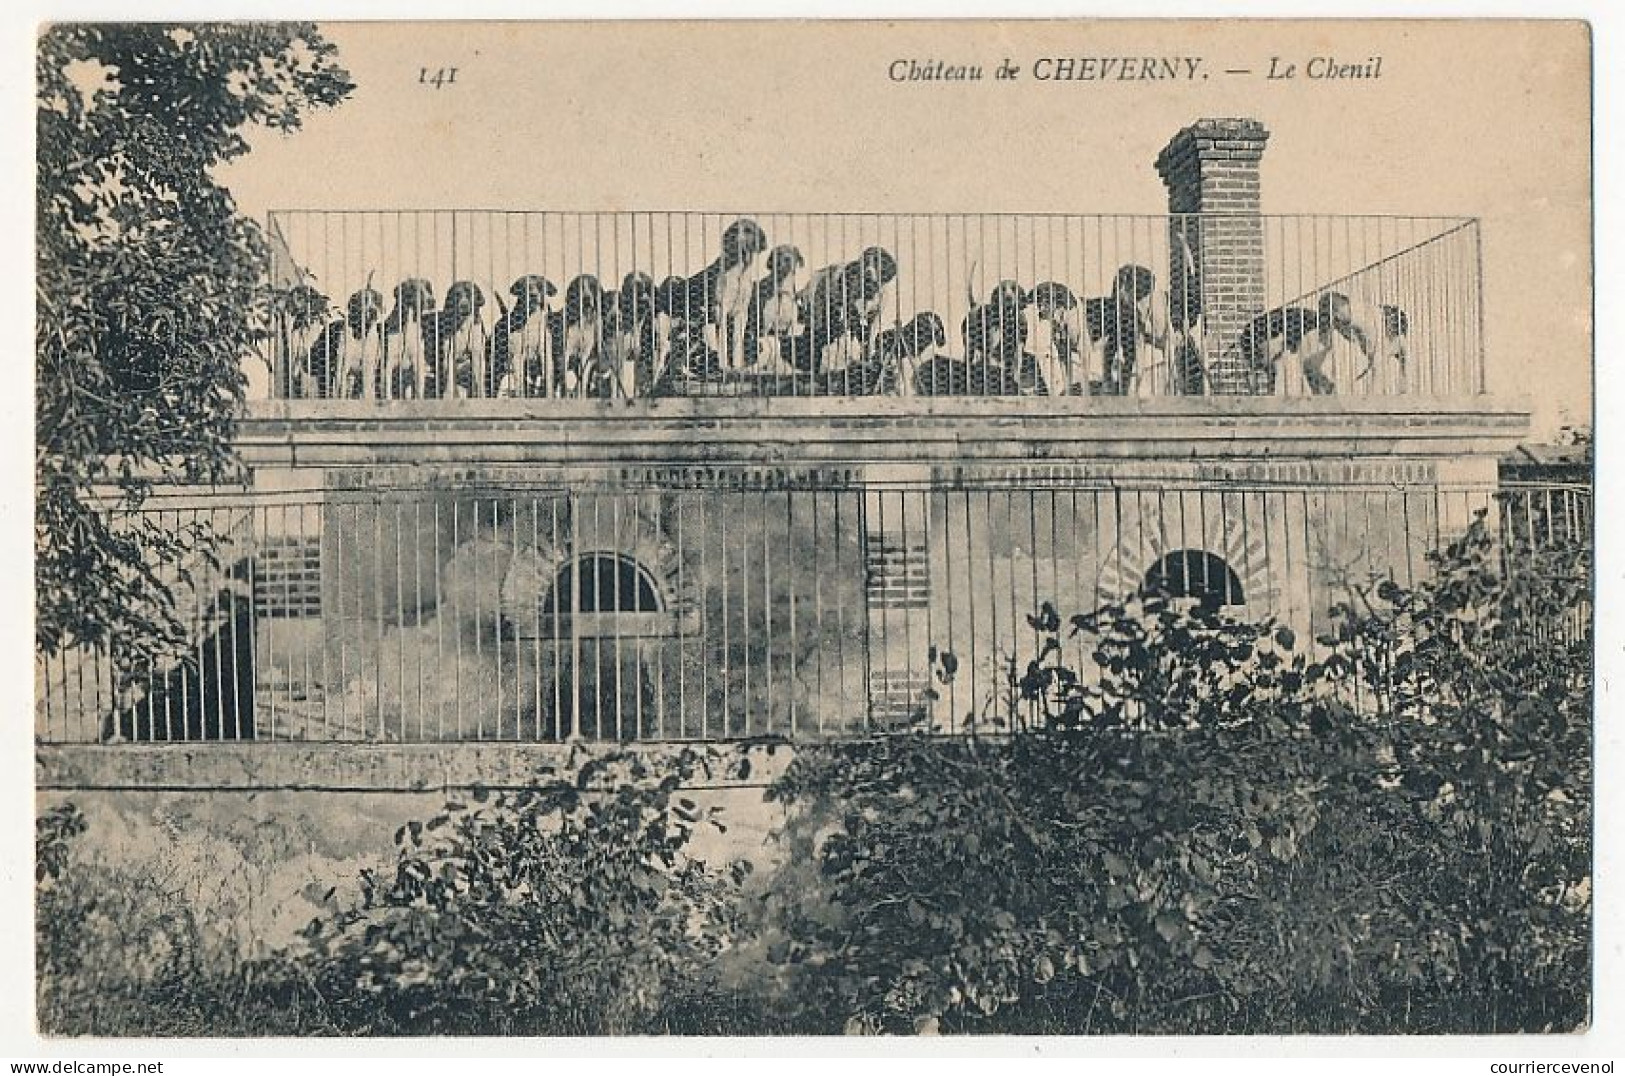 12 CPA - CHEVERNY (Loir et Cher) - Le Chateau / Lot de 12 cartes toutes différentes (dont 1 carte dos blanc non imprimé)